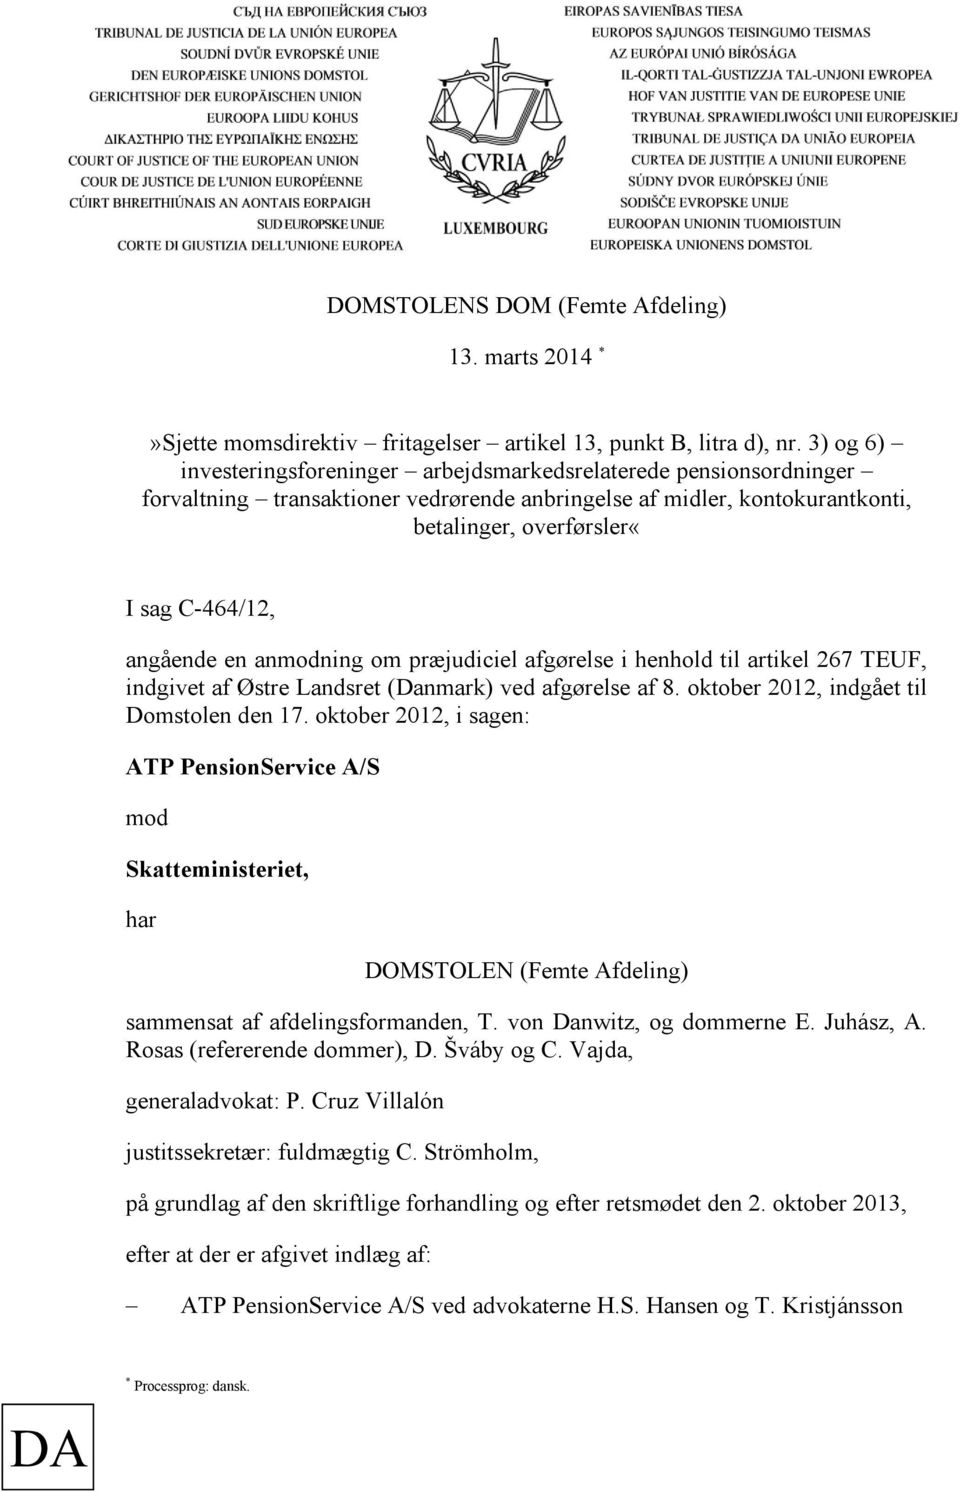 angående en anmodning om præjudiciel afgørelse i henhold til artikel 267 TEUF, indgivet af Østre Landsret (Danmark) ved afgørelse af 8. oktober 2012, indgået til Domstolen den 17.